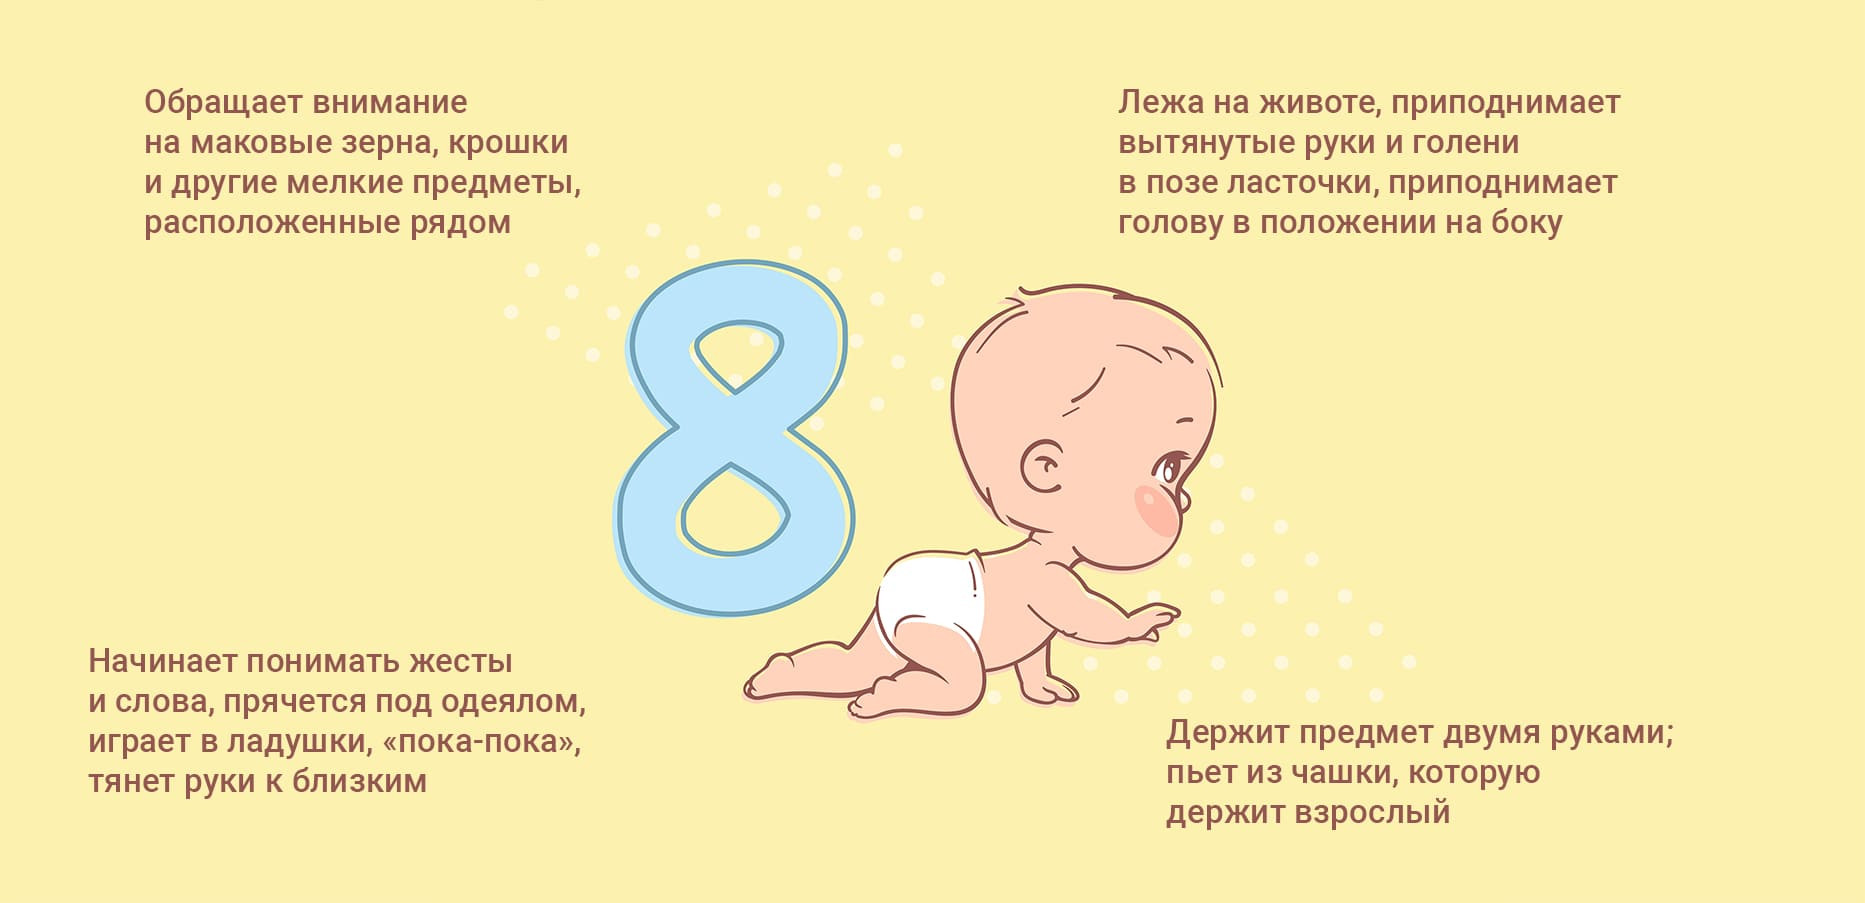 Второй месяц жизни ребенка